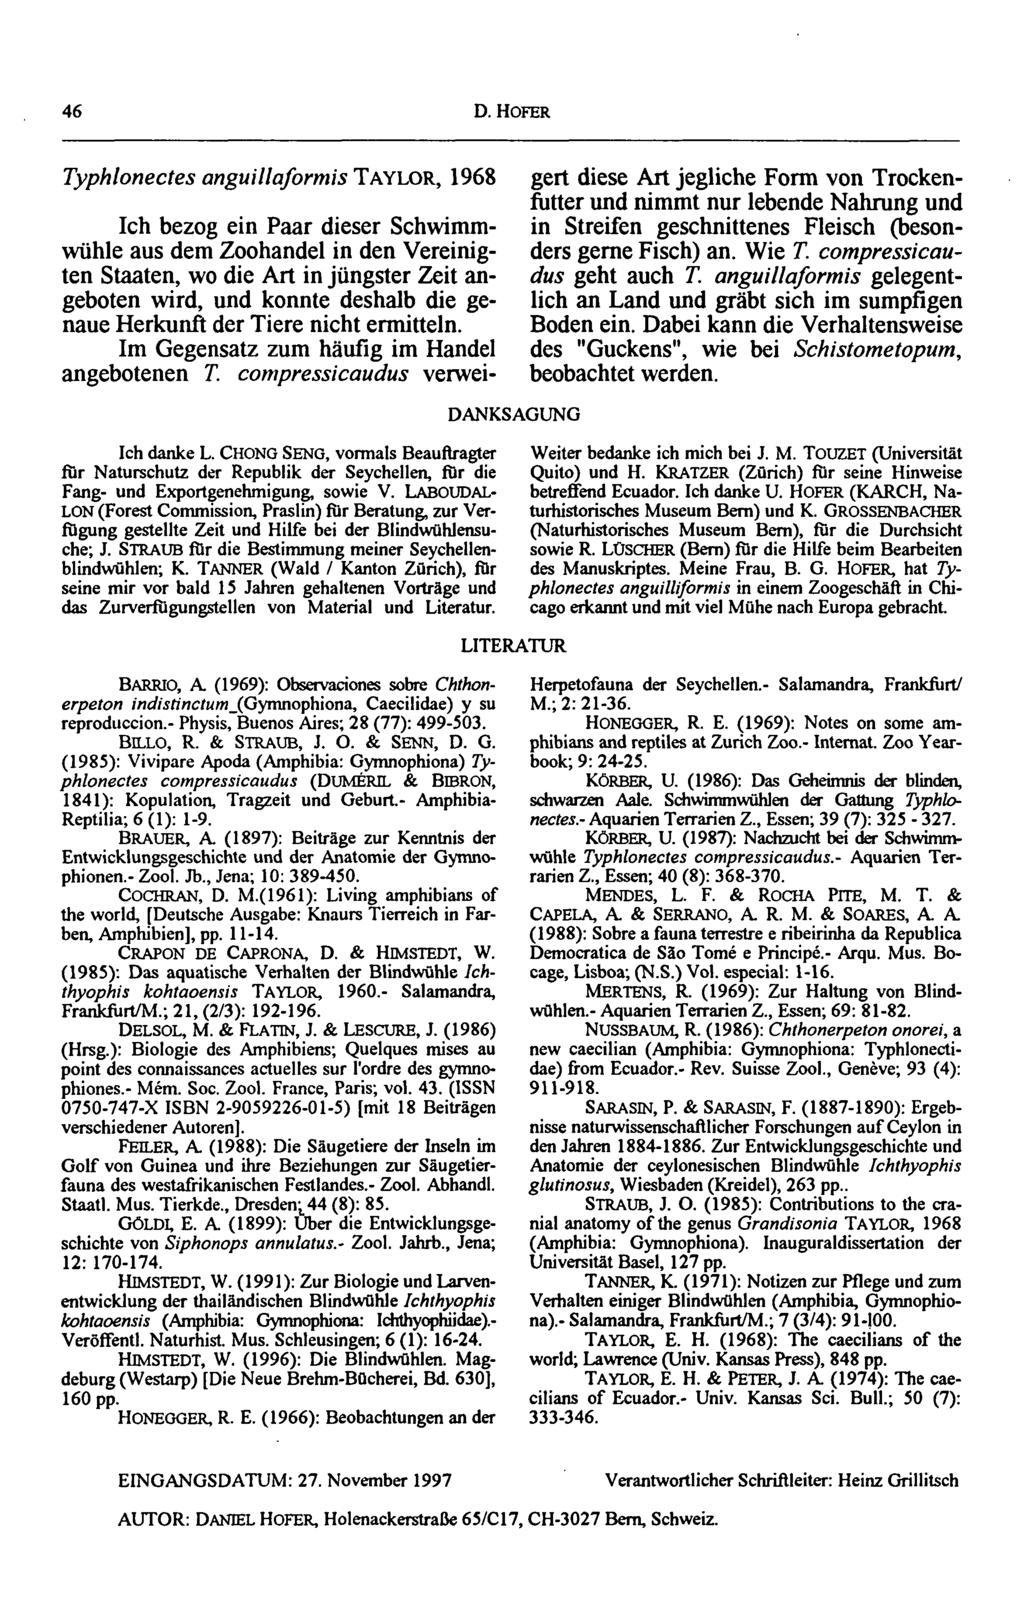 46 D. HOFER Typhlonectes anguillaformis TAYLOR, 1968 Ich danke L. CHONG SENG, vormals Beauftragter fur Naturschutz der Republik der Seychellen, fur die Fang- und Exportgenehmigung, sowie V.